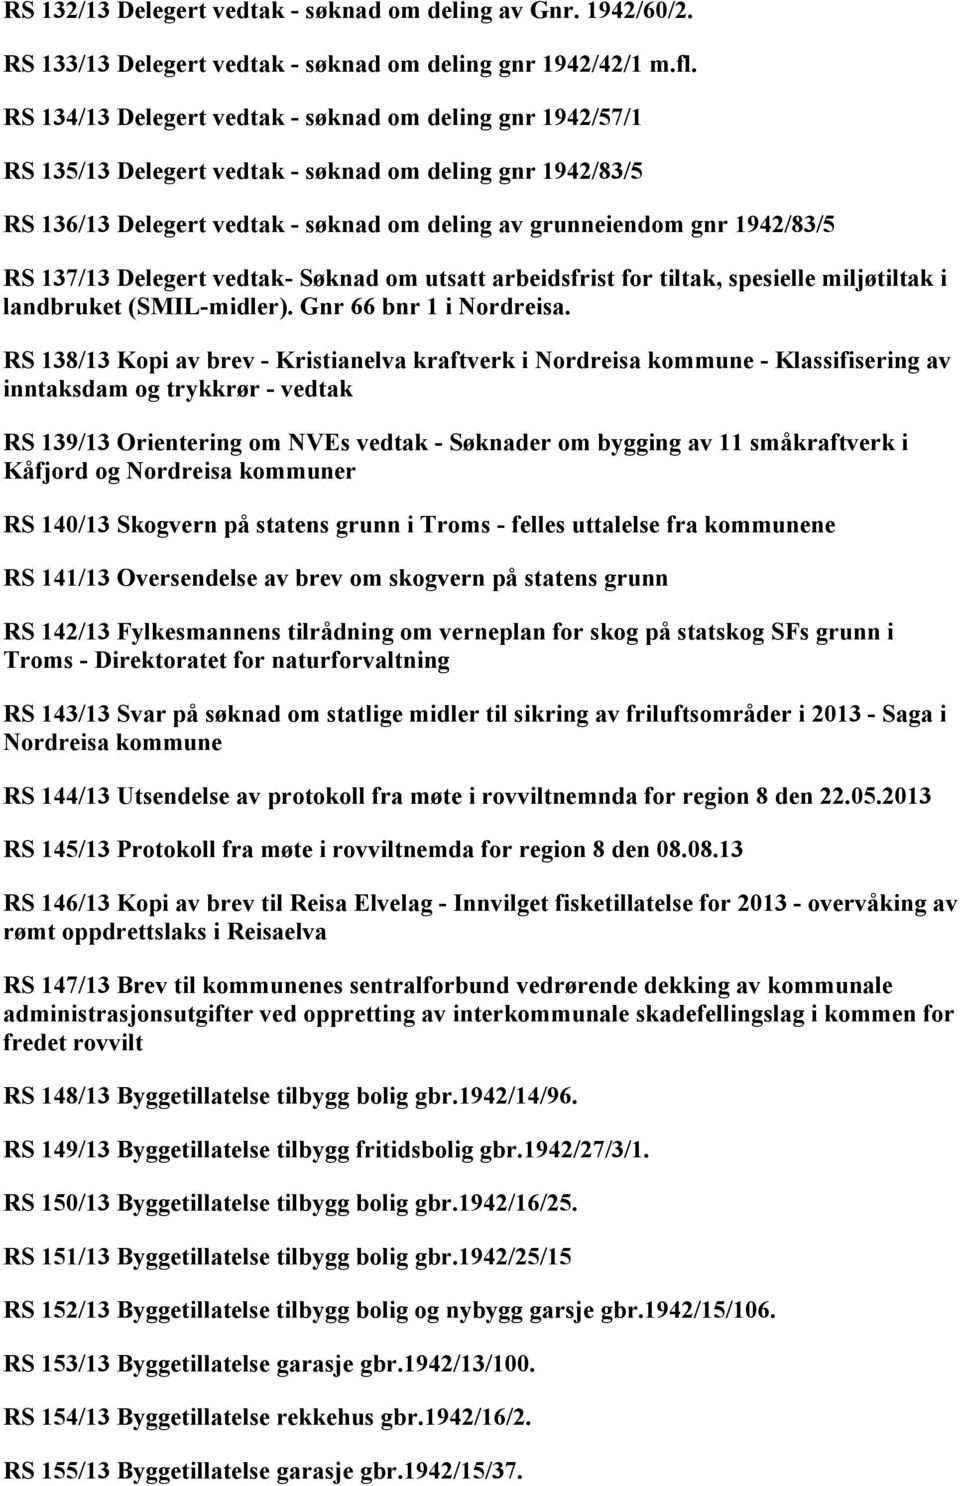 137/13 Delegert vedtak- Søknad om utsatt arbeidsfrist for tiltak, spesielle miljøtiltak i landbruket (SMIL-midler). Gnr 66 bnr 1 i Nordreisa.